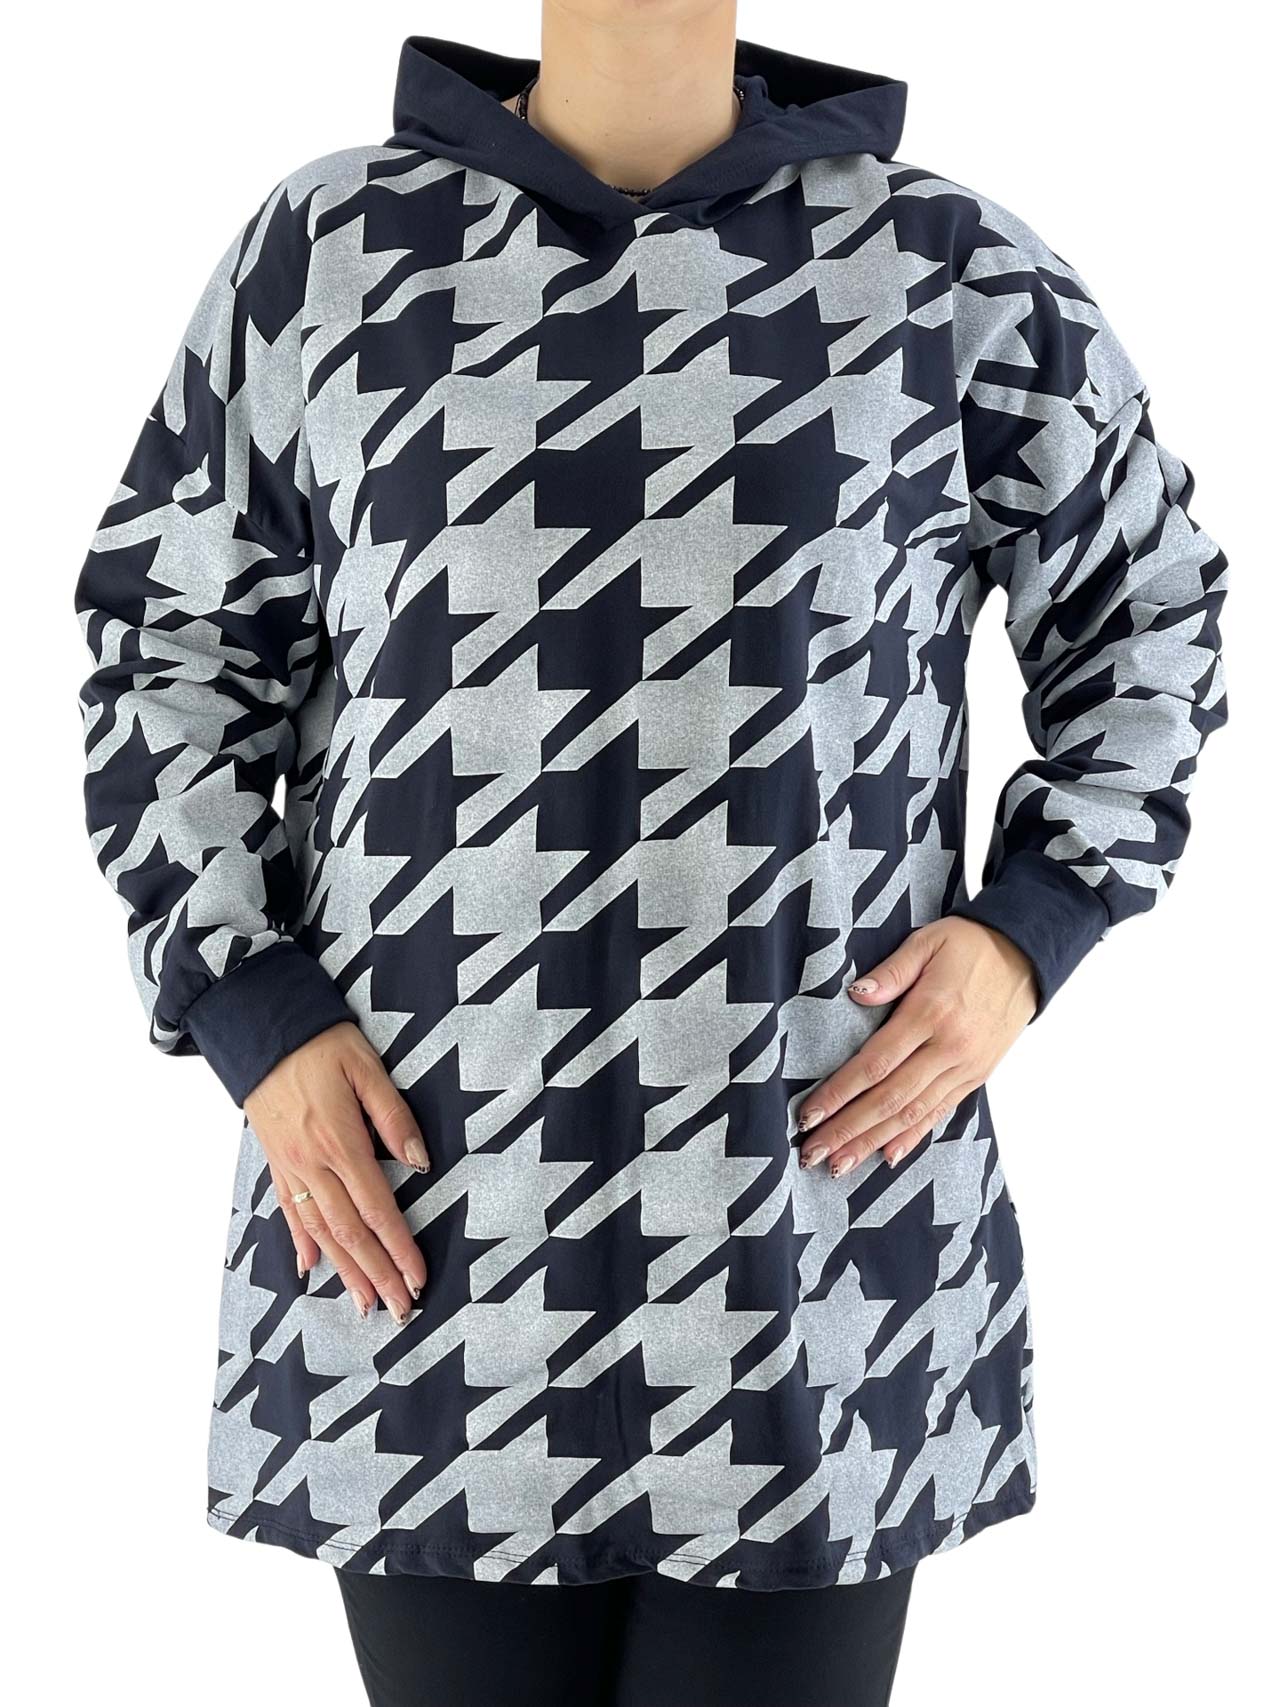 Μπλούζα φούτερ με κουκούλα και μοτίβο κωδ. 81851 μπροστινή όψη- μπλε